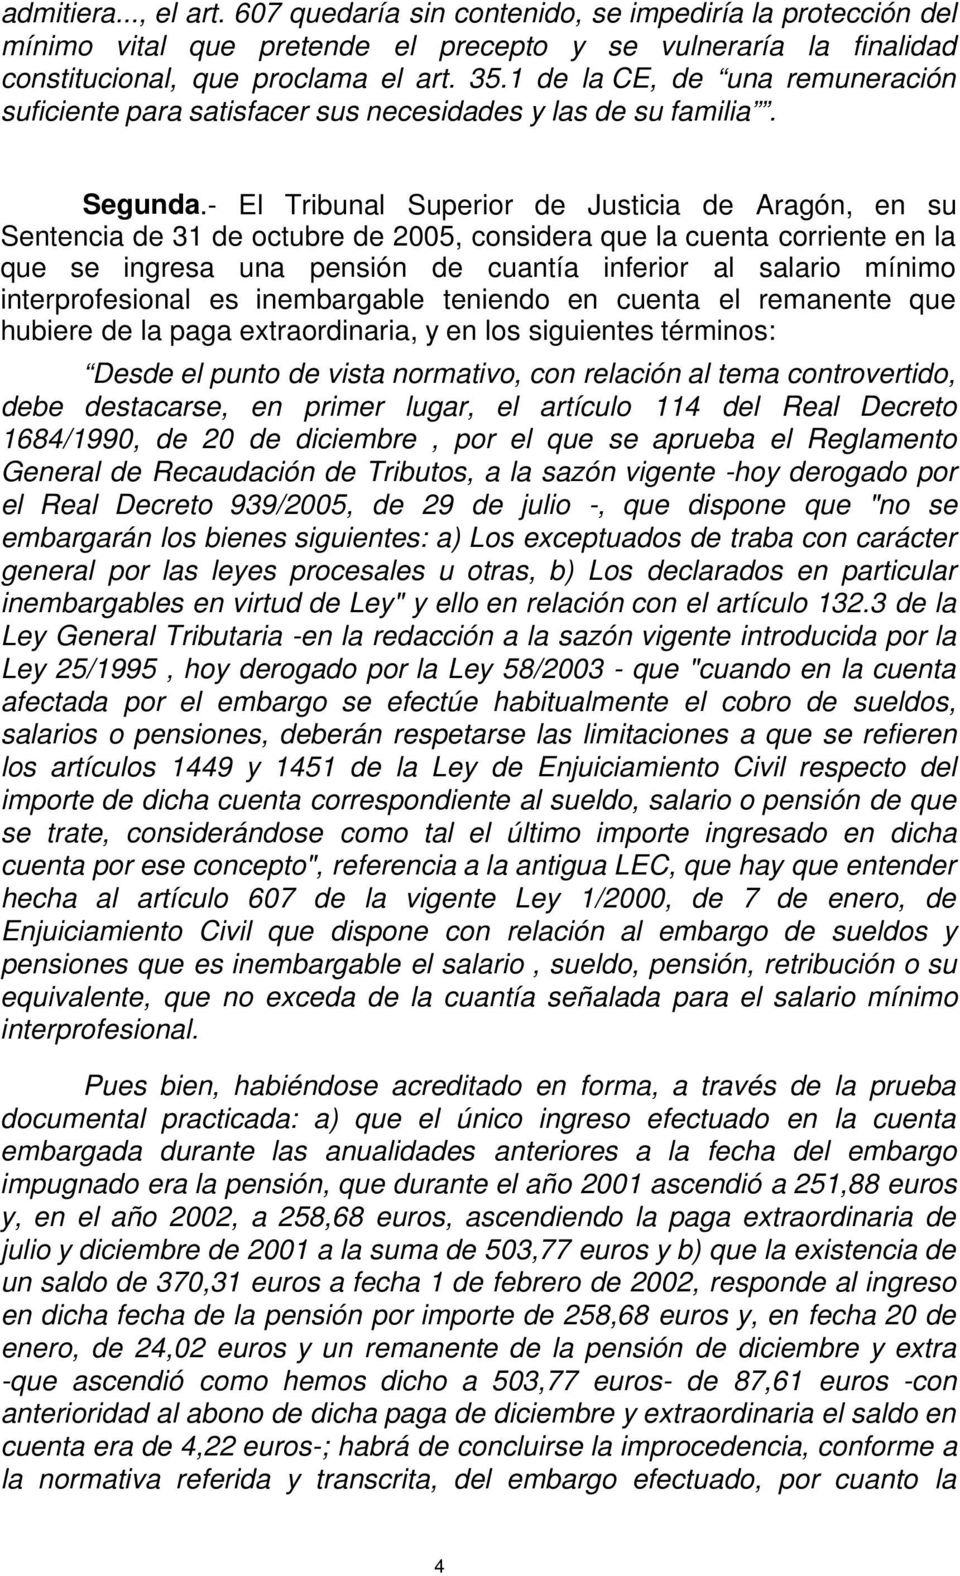 - El Tribunal Superior de Justicia de Aragón, en su Sentencia de 31 de octubre de 2005, considera que la cuenta corriente en la que se ingresa una pensión de cuantía inferior al salario mínimo